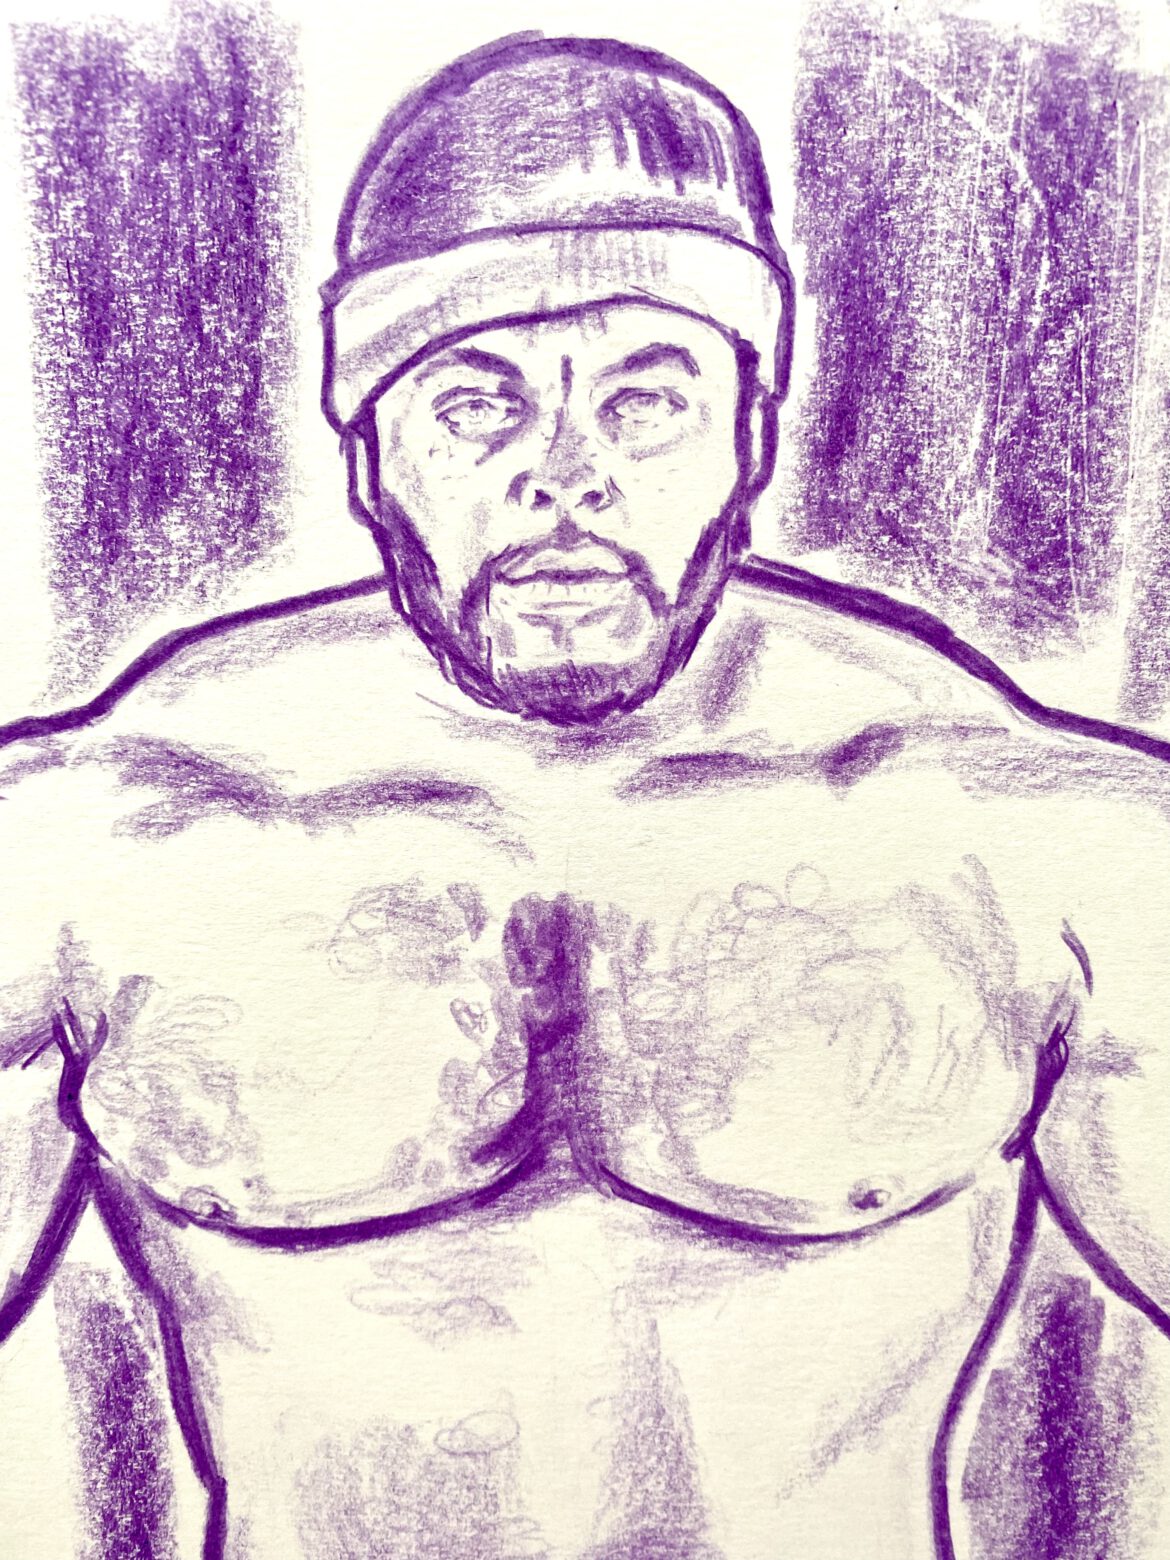 drawing of a bearded bodybuilder in a jockstrap by Berlin artist Paul Astor